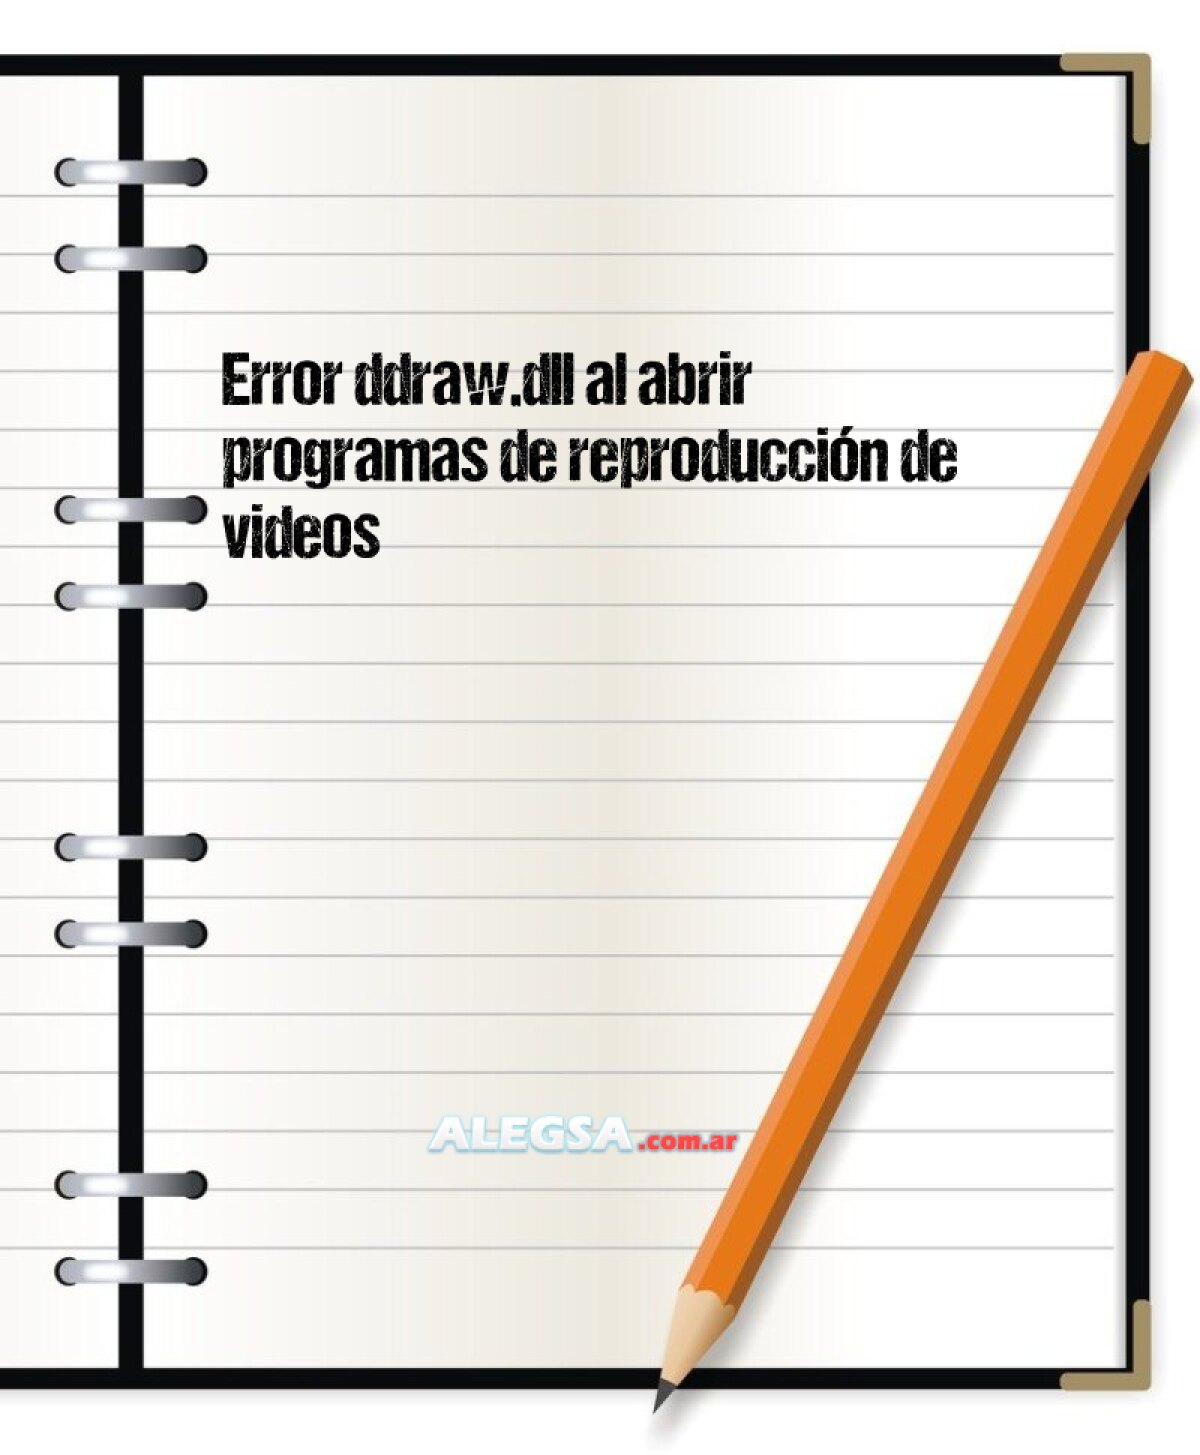 Error ddraw.dll al abrir programas de reproducción de videos